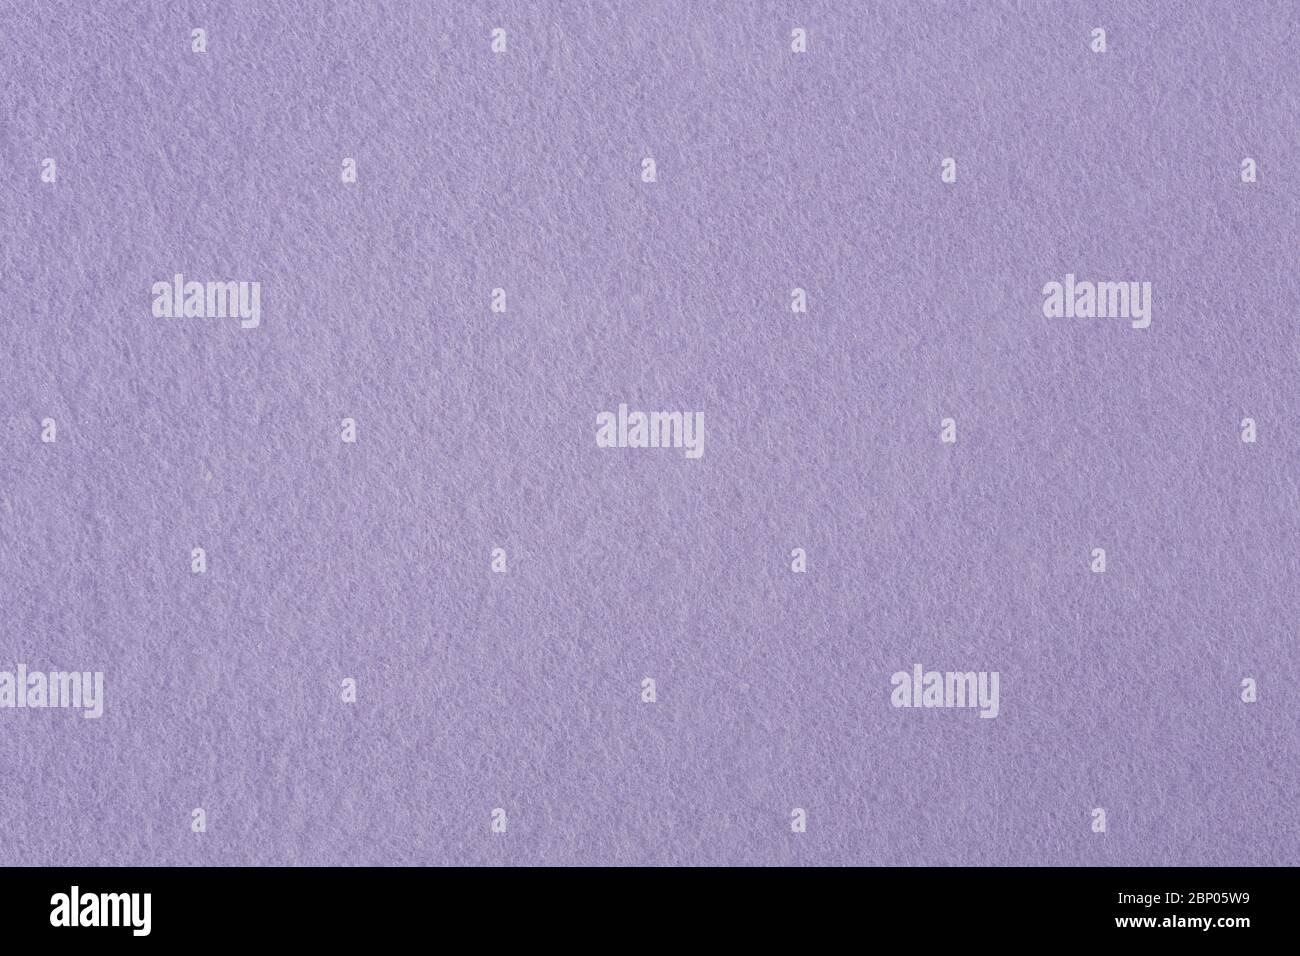 Dark Purple Felt Texture Design Abstract Stock Photo 524180578